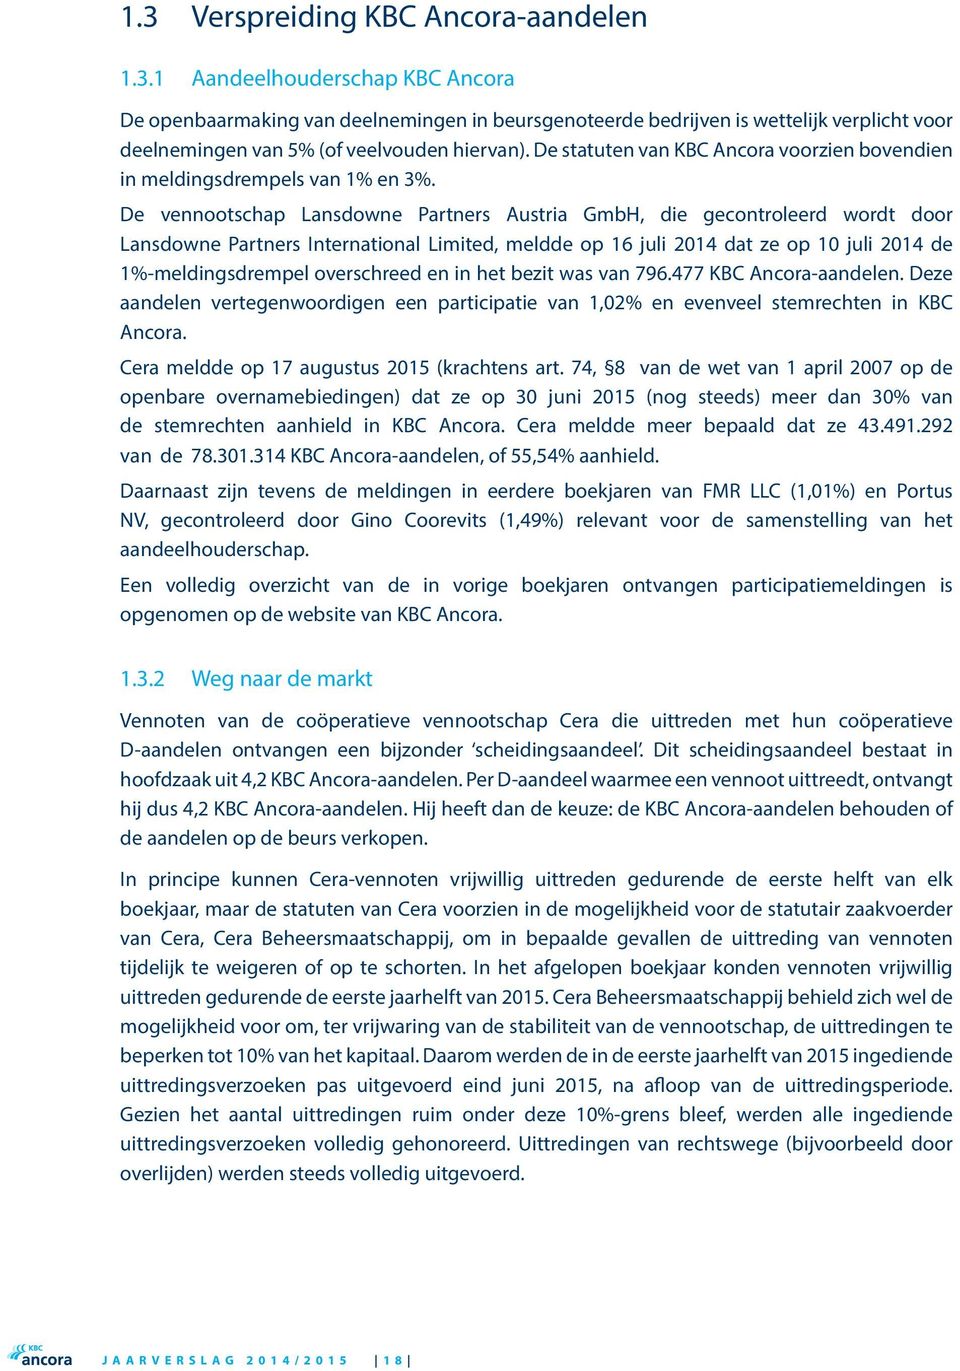 De vennootschap Lansdowne Partners Austria GmbH, die gecontroleerd wordt door Lansdowne Partners International Limited, meldde op 16 juli 2014 dat ze op 10 juli 2014 de 1%-meldingsdrempel overschreed